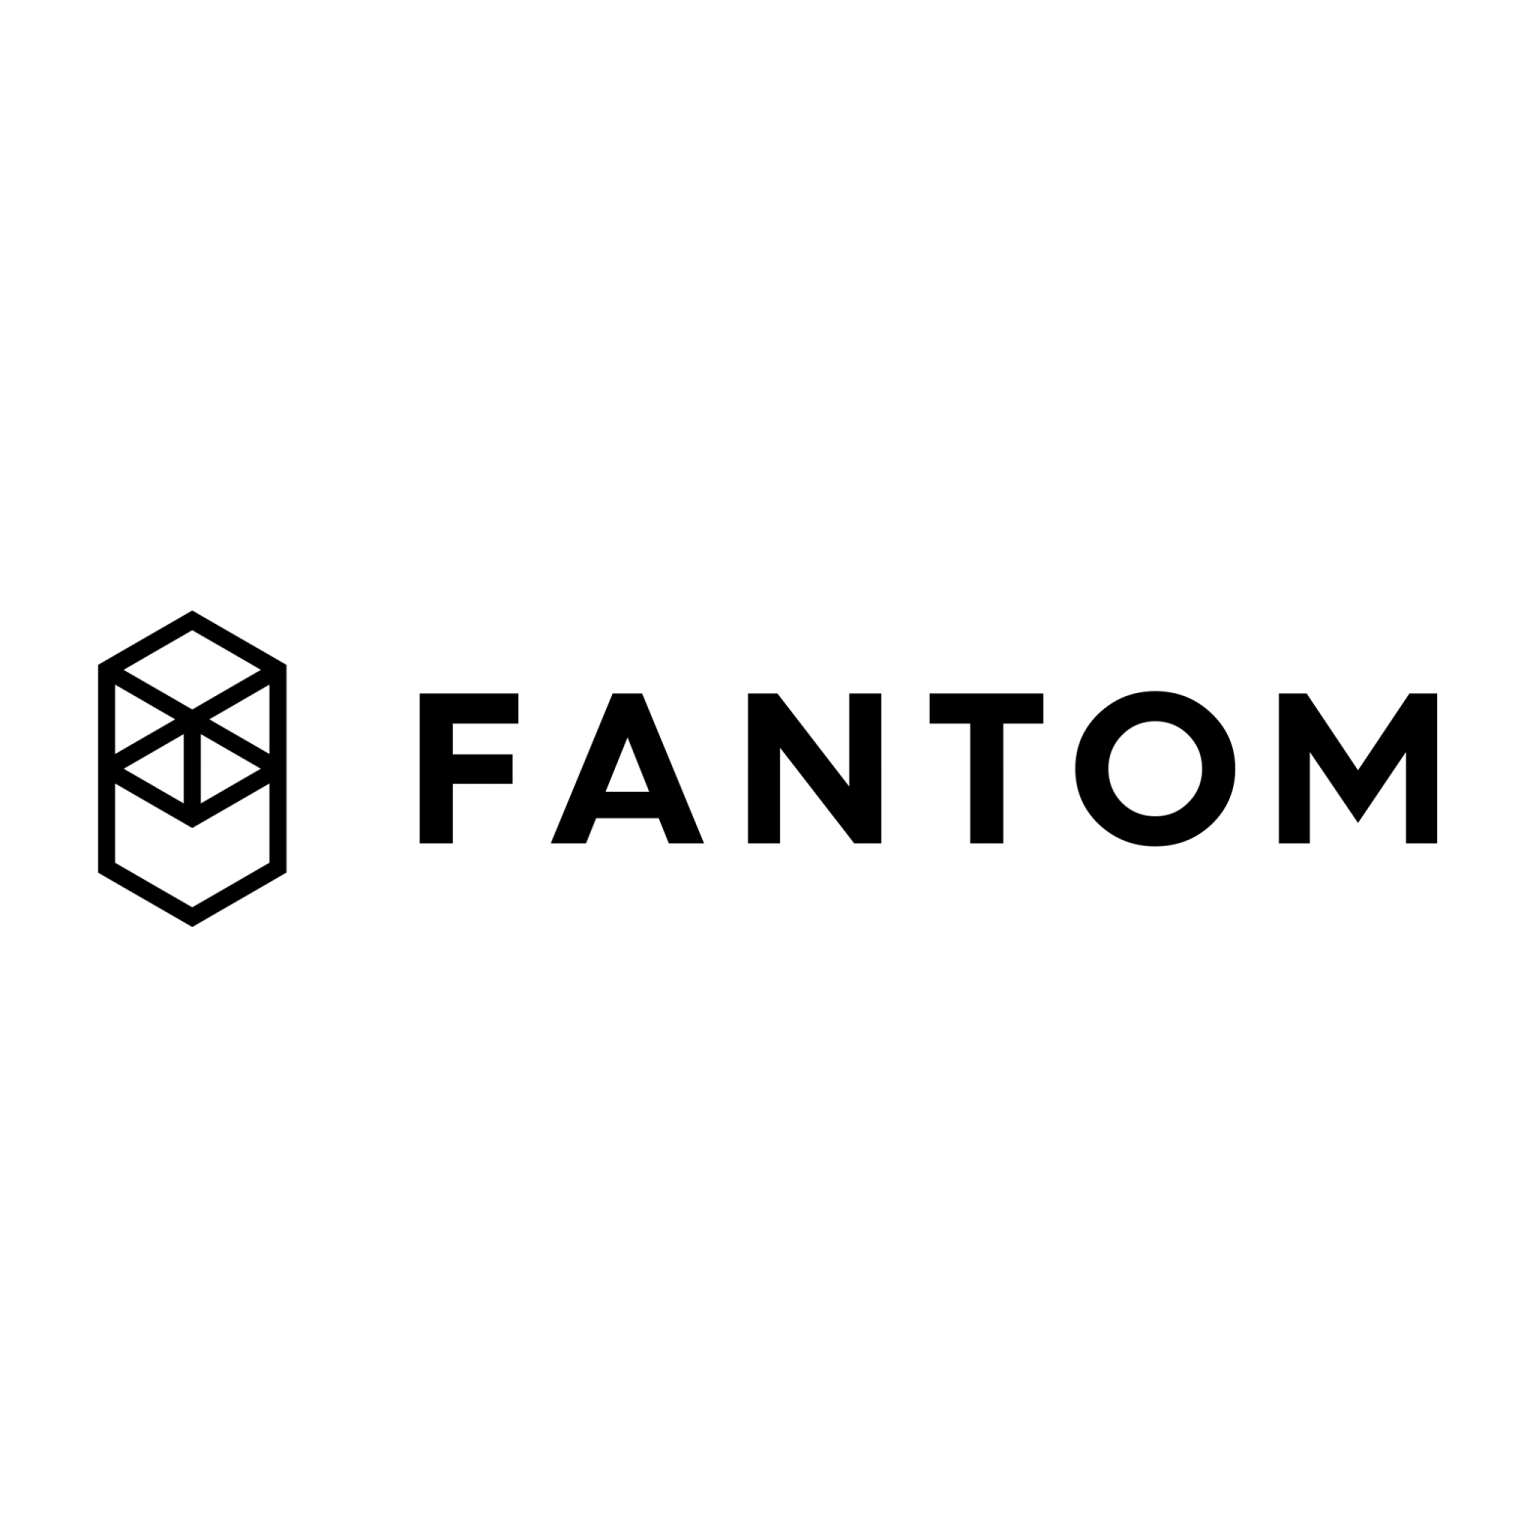 Fantom (FTM) Koers verwachting 2021 - Wat gaat de Koers doen?